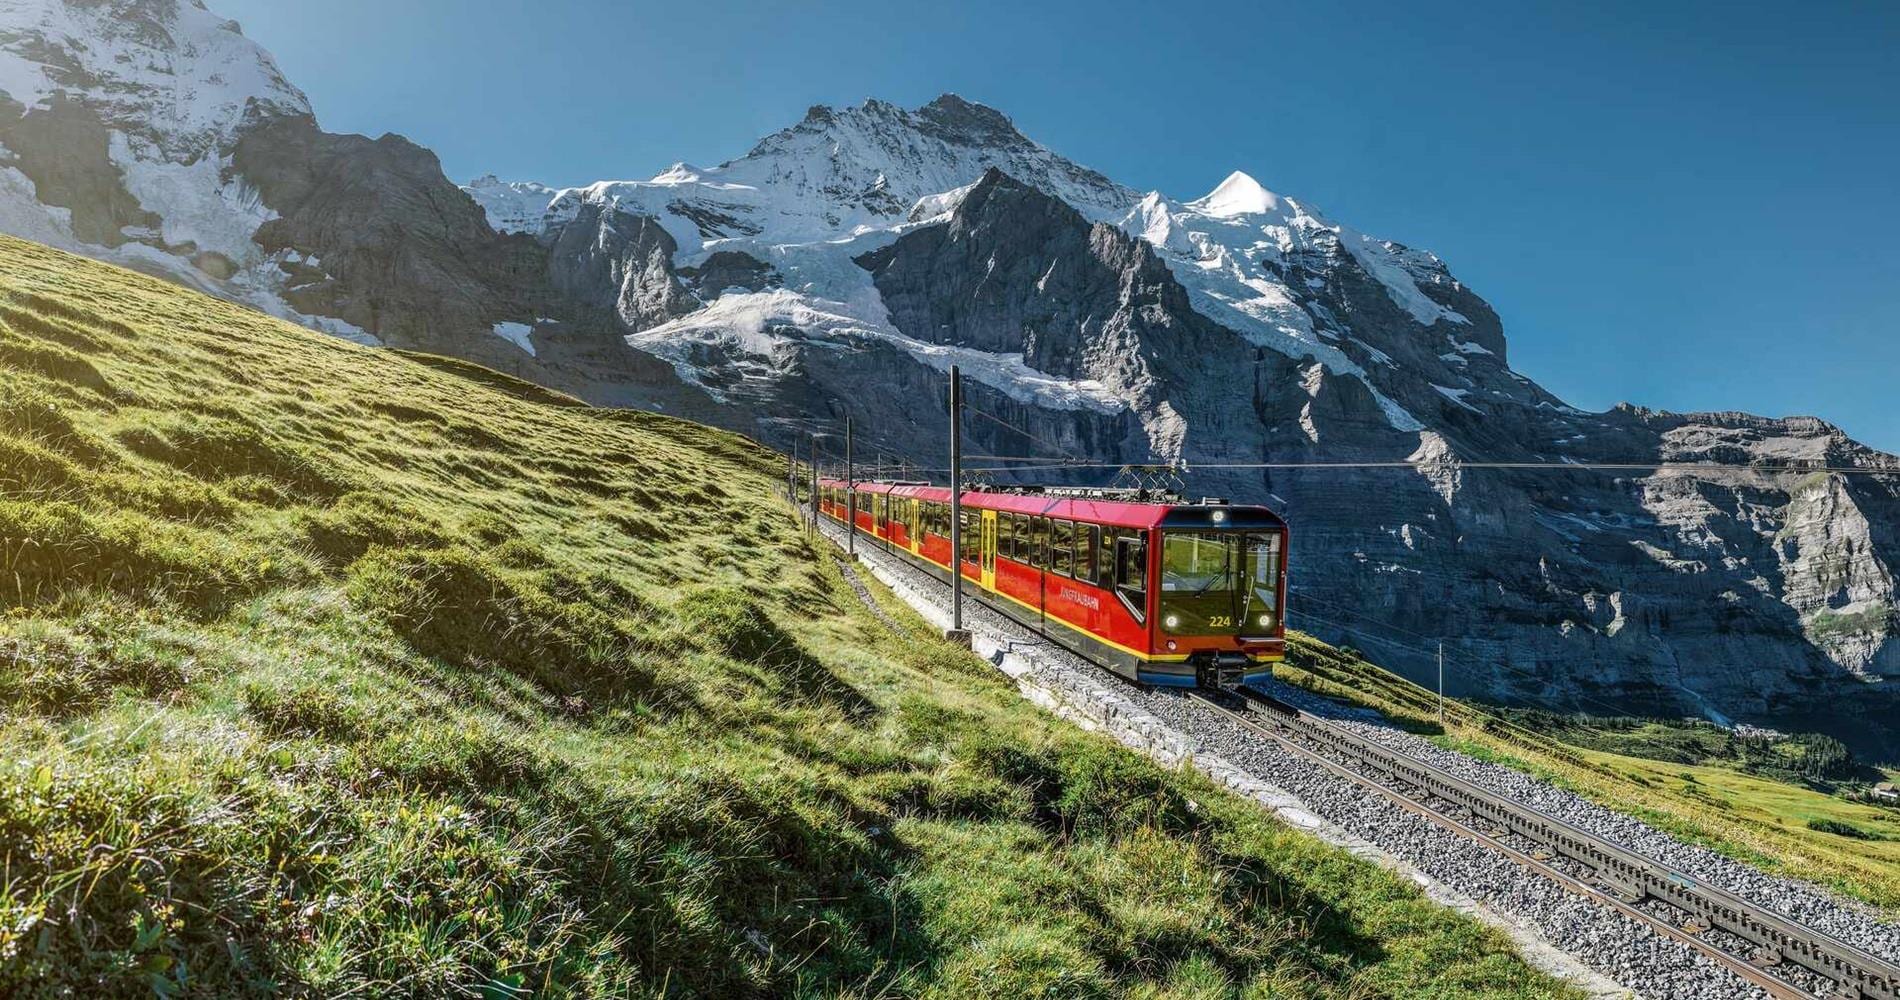 Panoramic view of the Jungfrau Railway, Switzerland